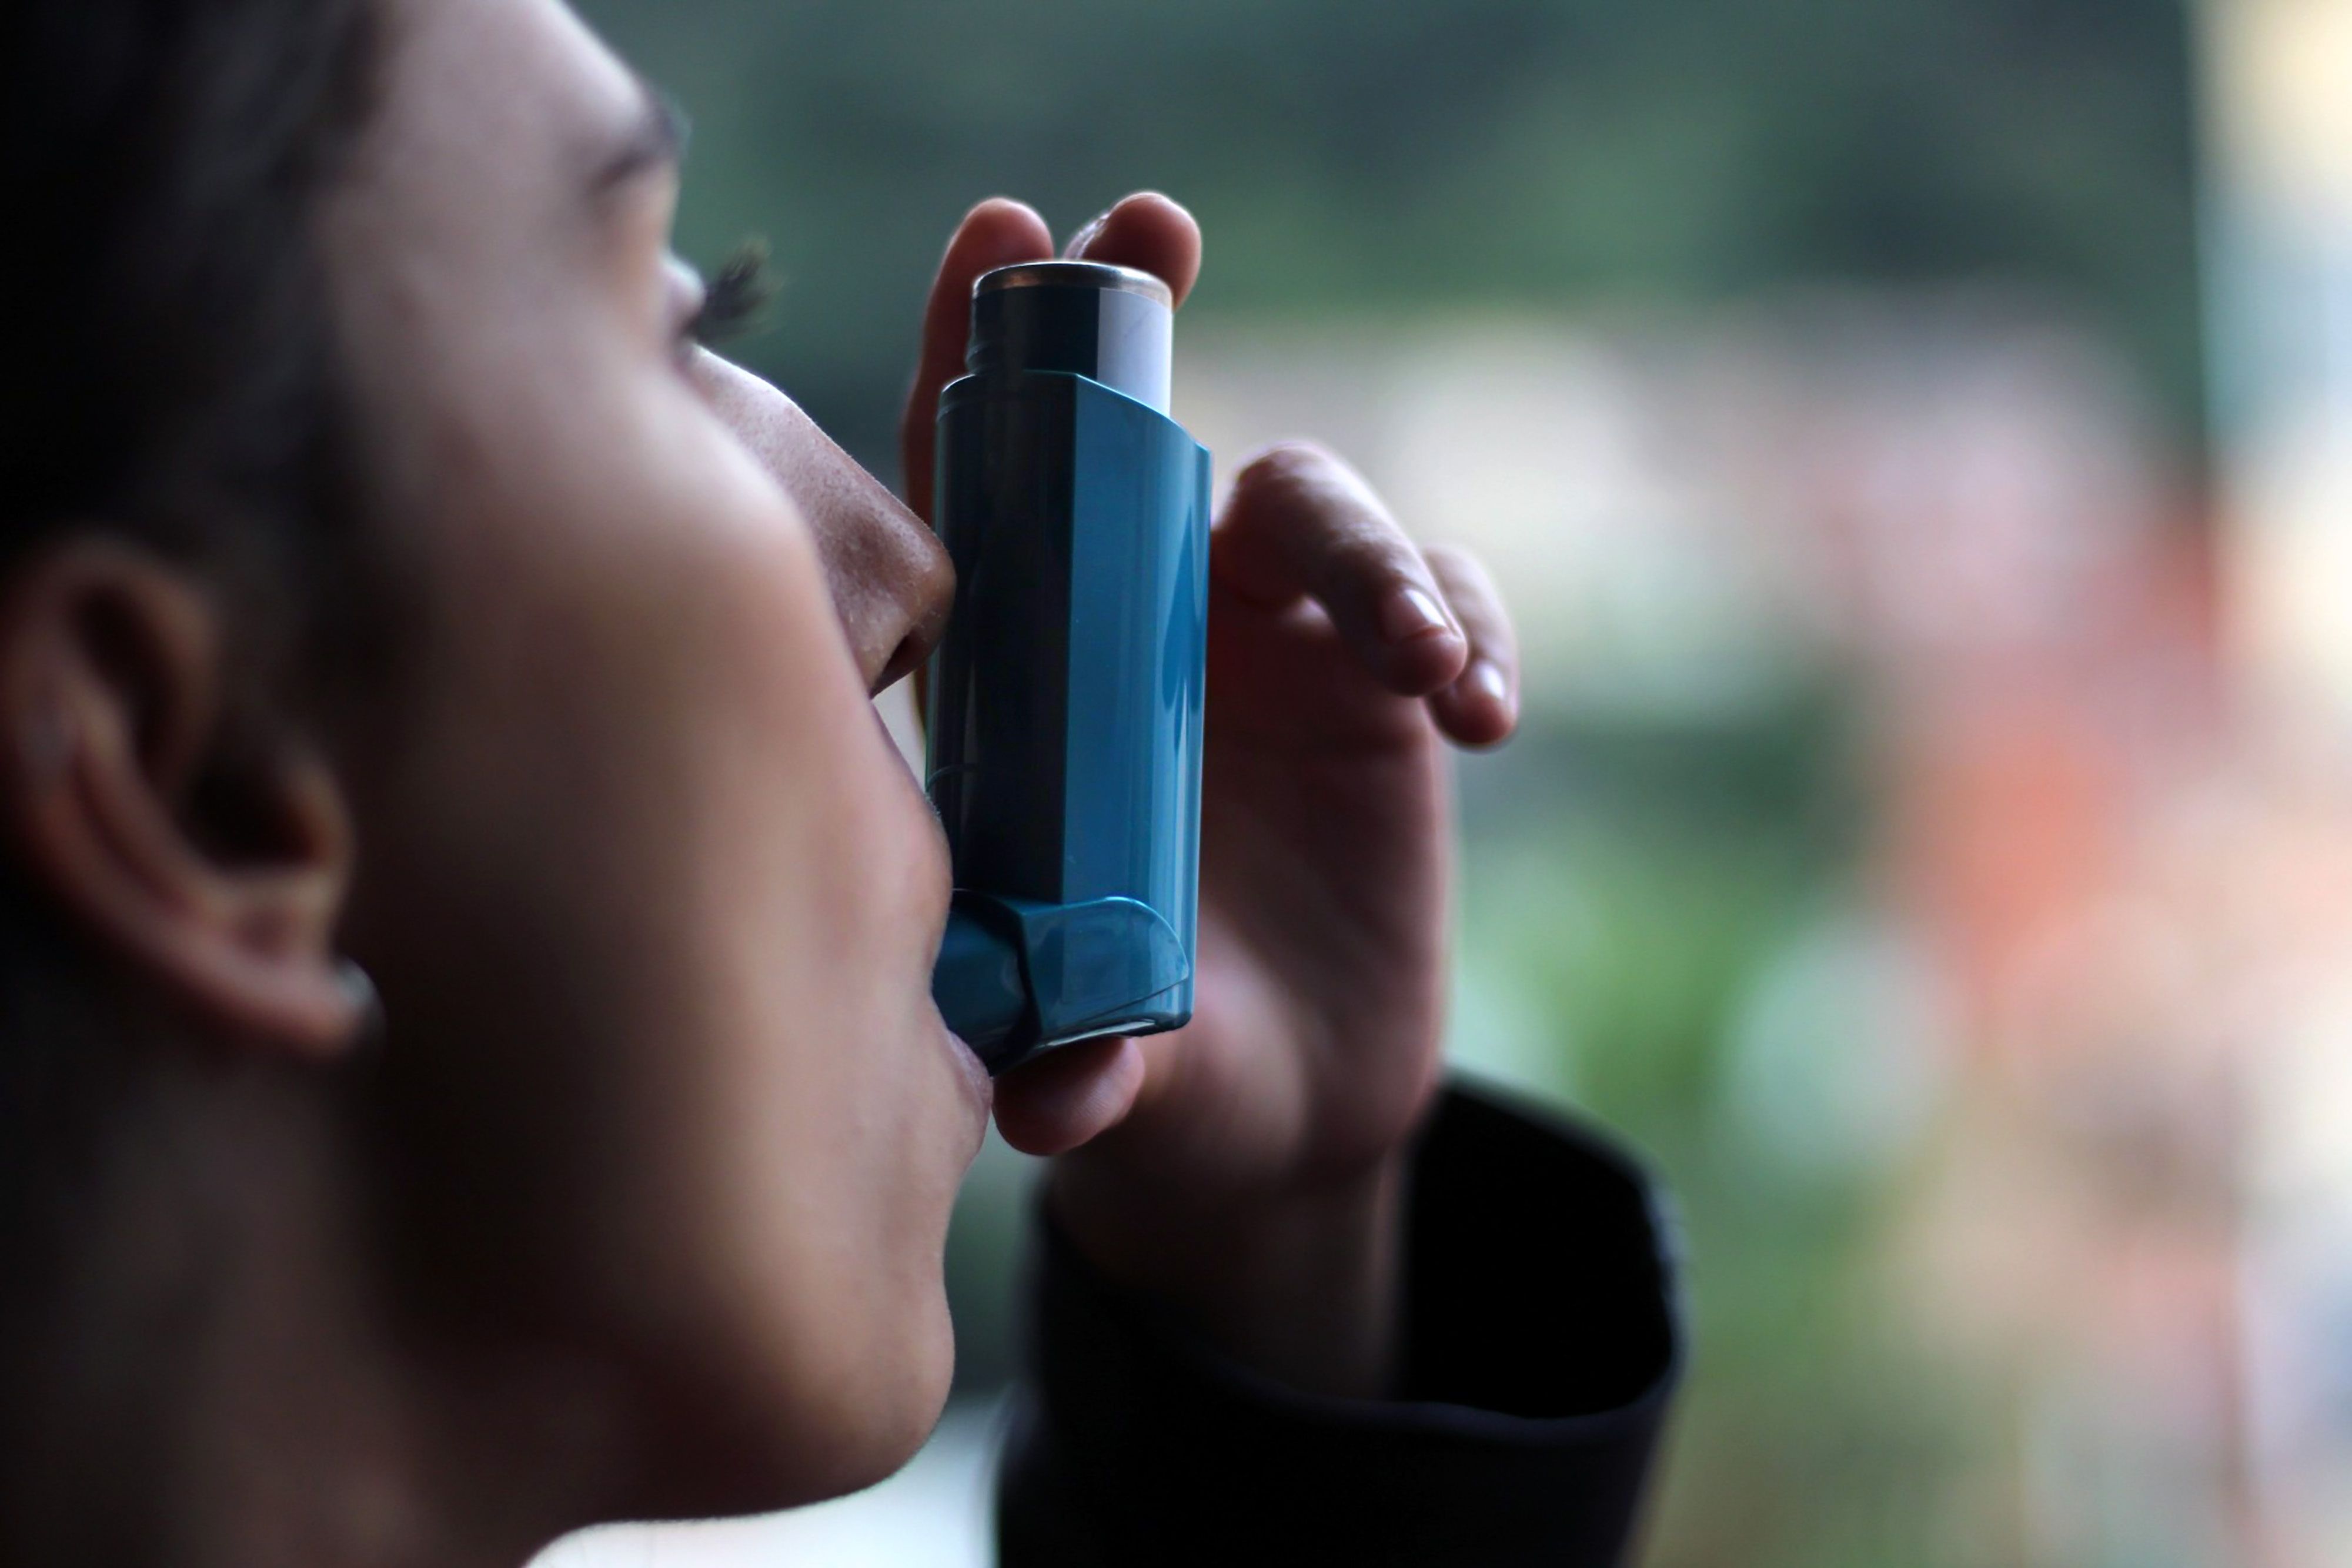 Se ha observado incertidumbre con respecto a la capacitación sobre inhaladores para el asma y otras barreras entre los profesionales de la salud.